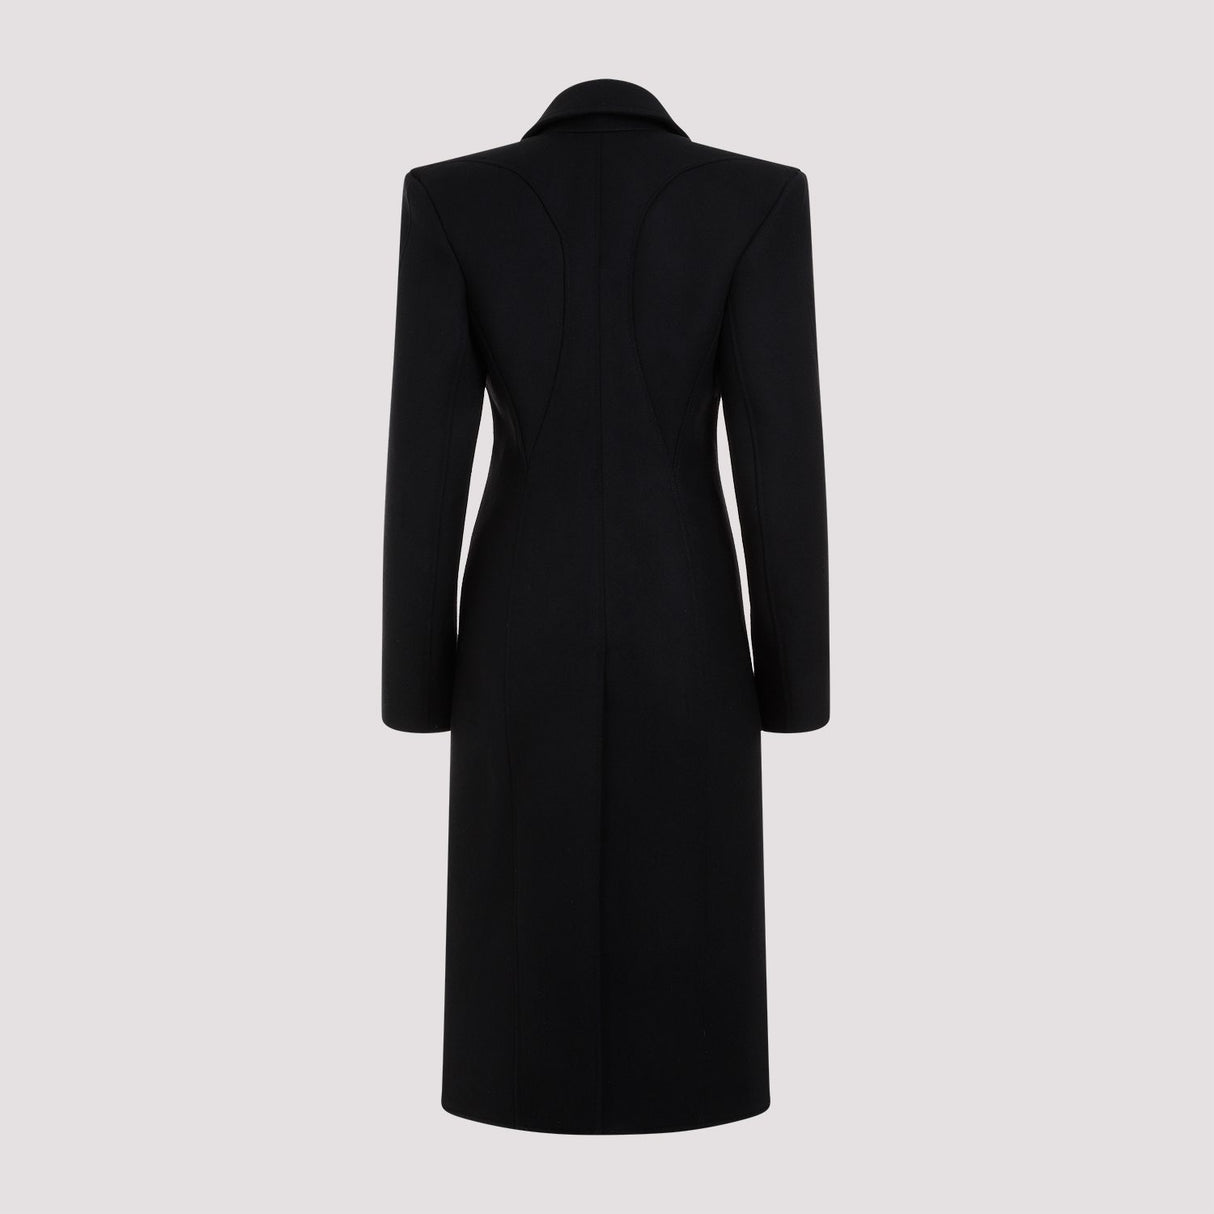 Áo khoác len đen cổ điển cho phái nữ - FW23